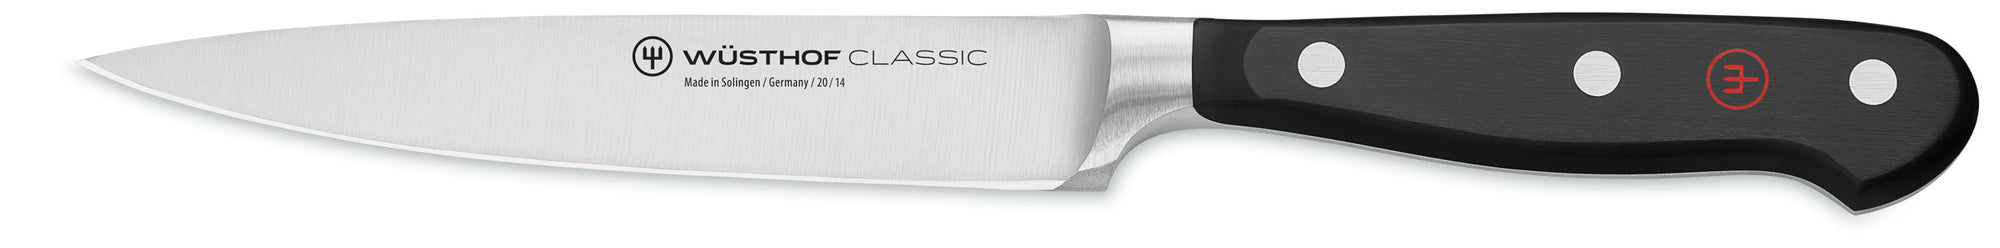 Wusthof Classic Utility Knife, 5-inch (14 cm) - 4522-14 Canada